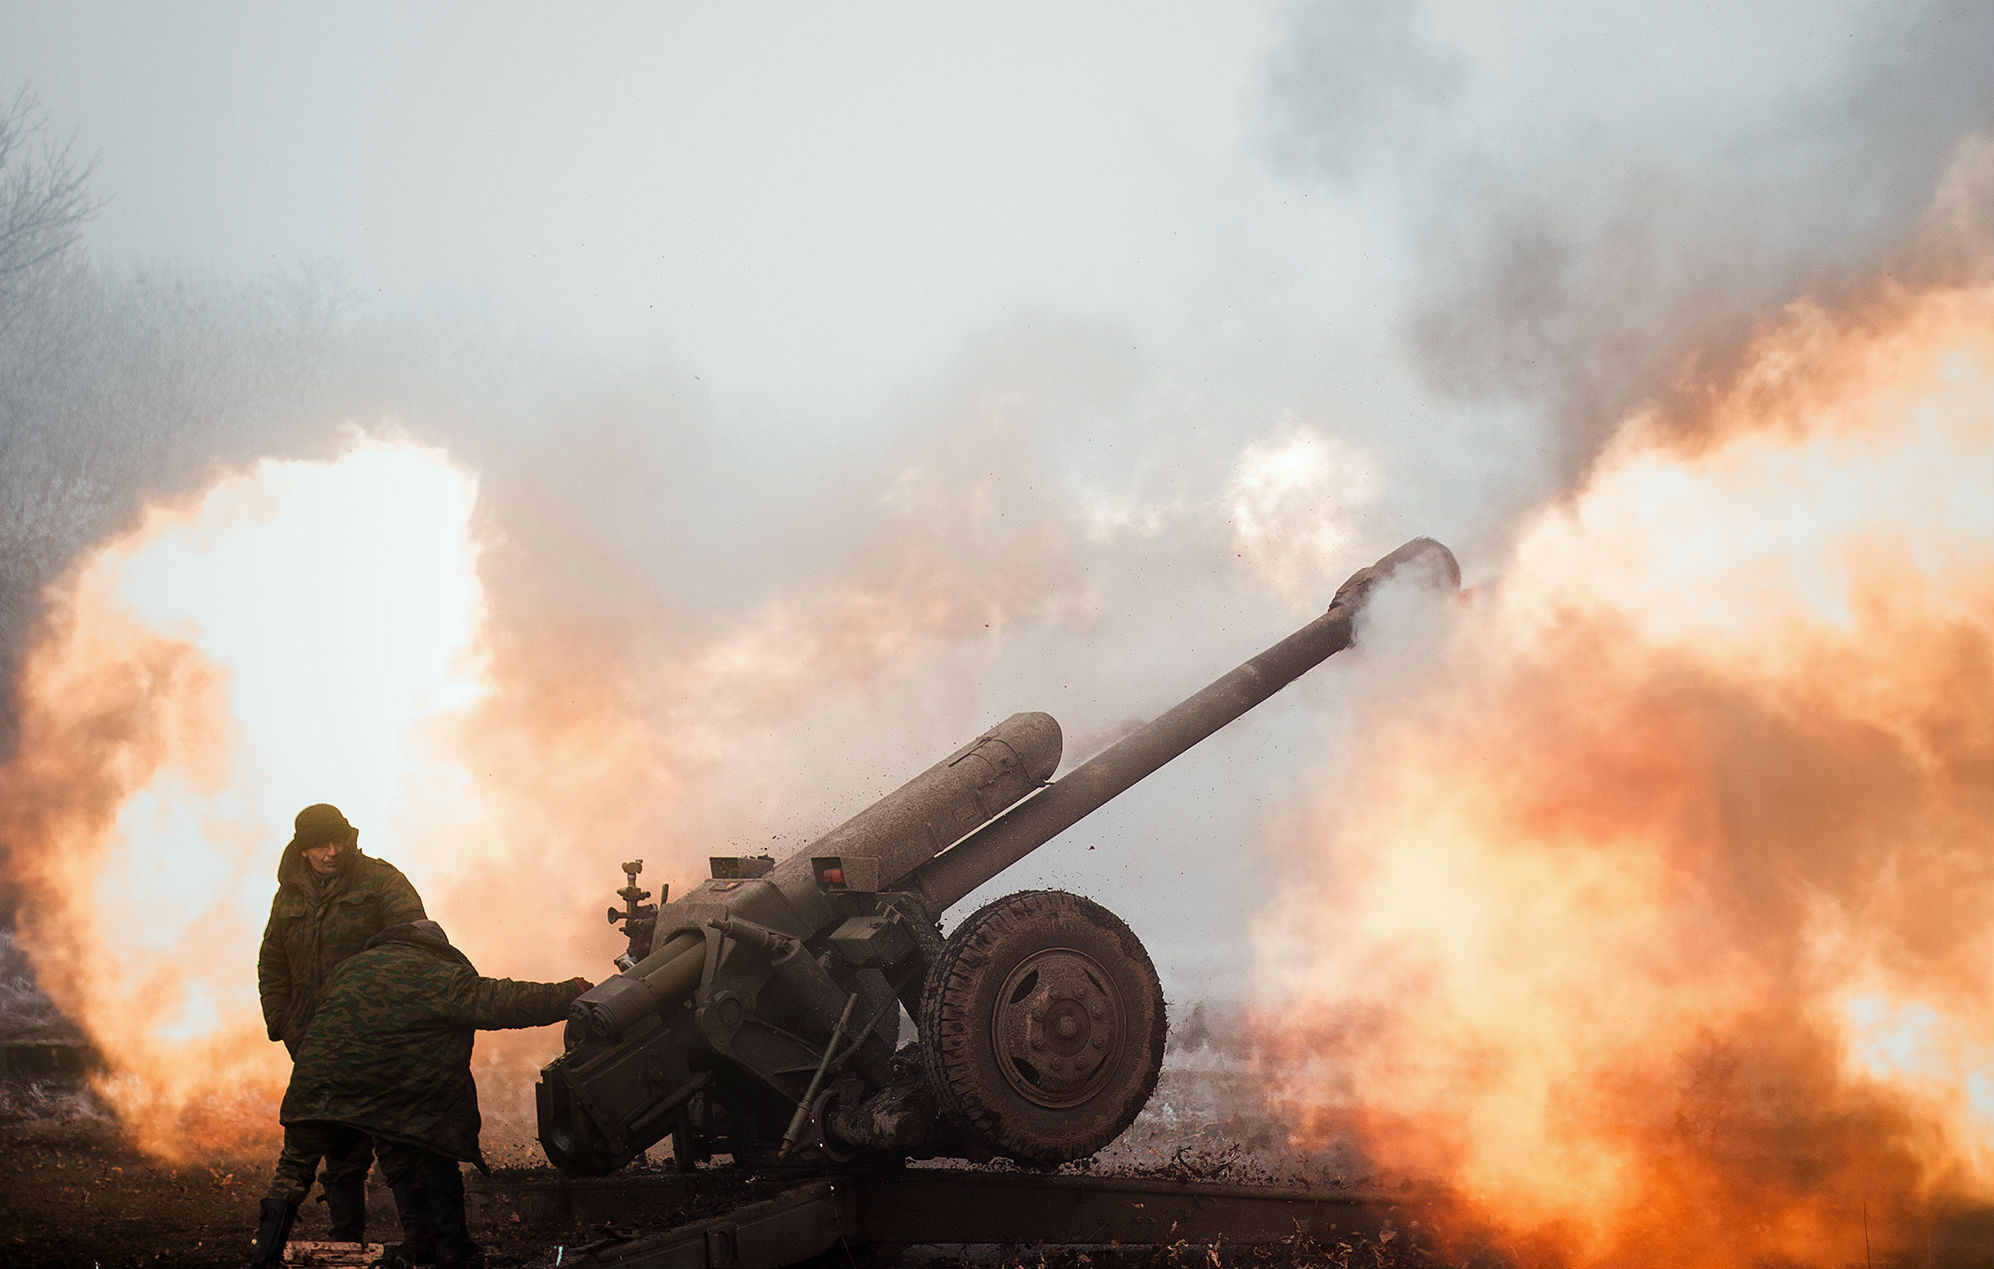 Видео, как ВСУ за 1,5 минуты ликвидировали укрепления российских военных на Донбассе: "Отработали четко и слаженно"